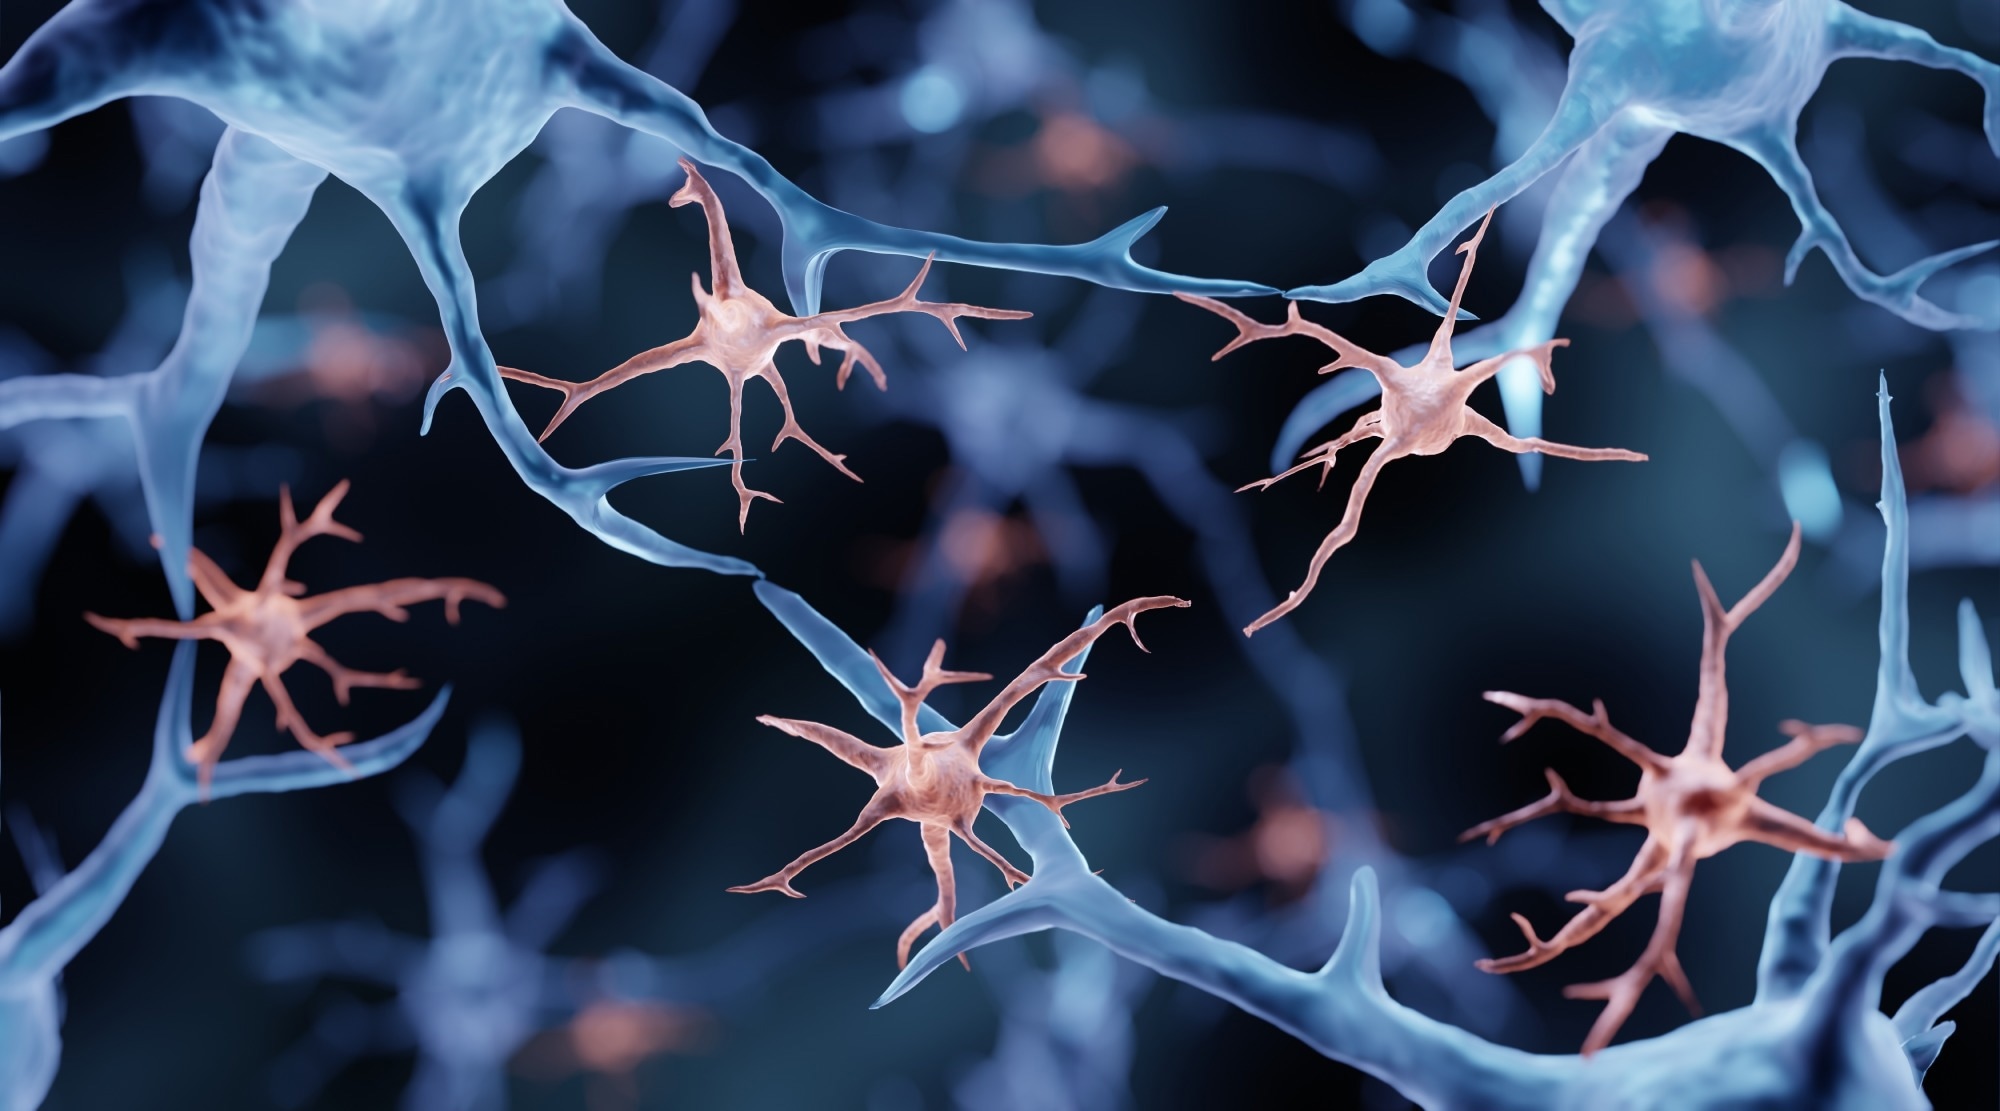 Brain rhythms control microglial response and cytokine expression via NF-κB signaling